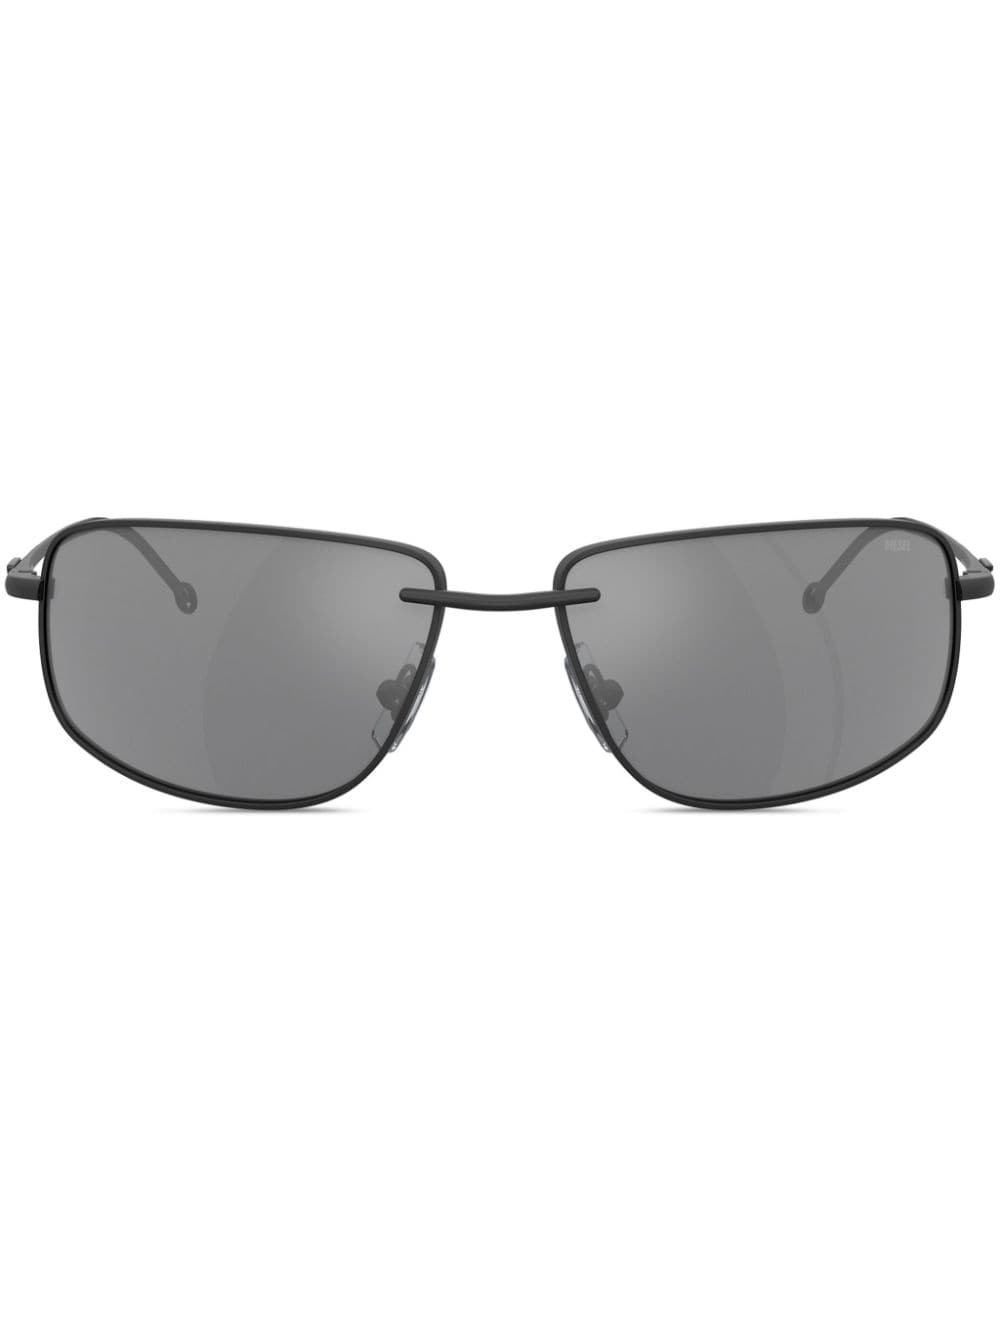 logo-plaque rectangle-frame sunglasses - 1